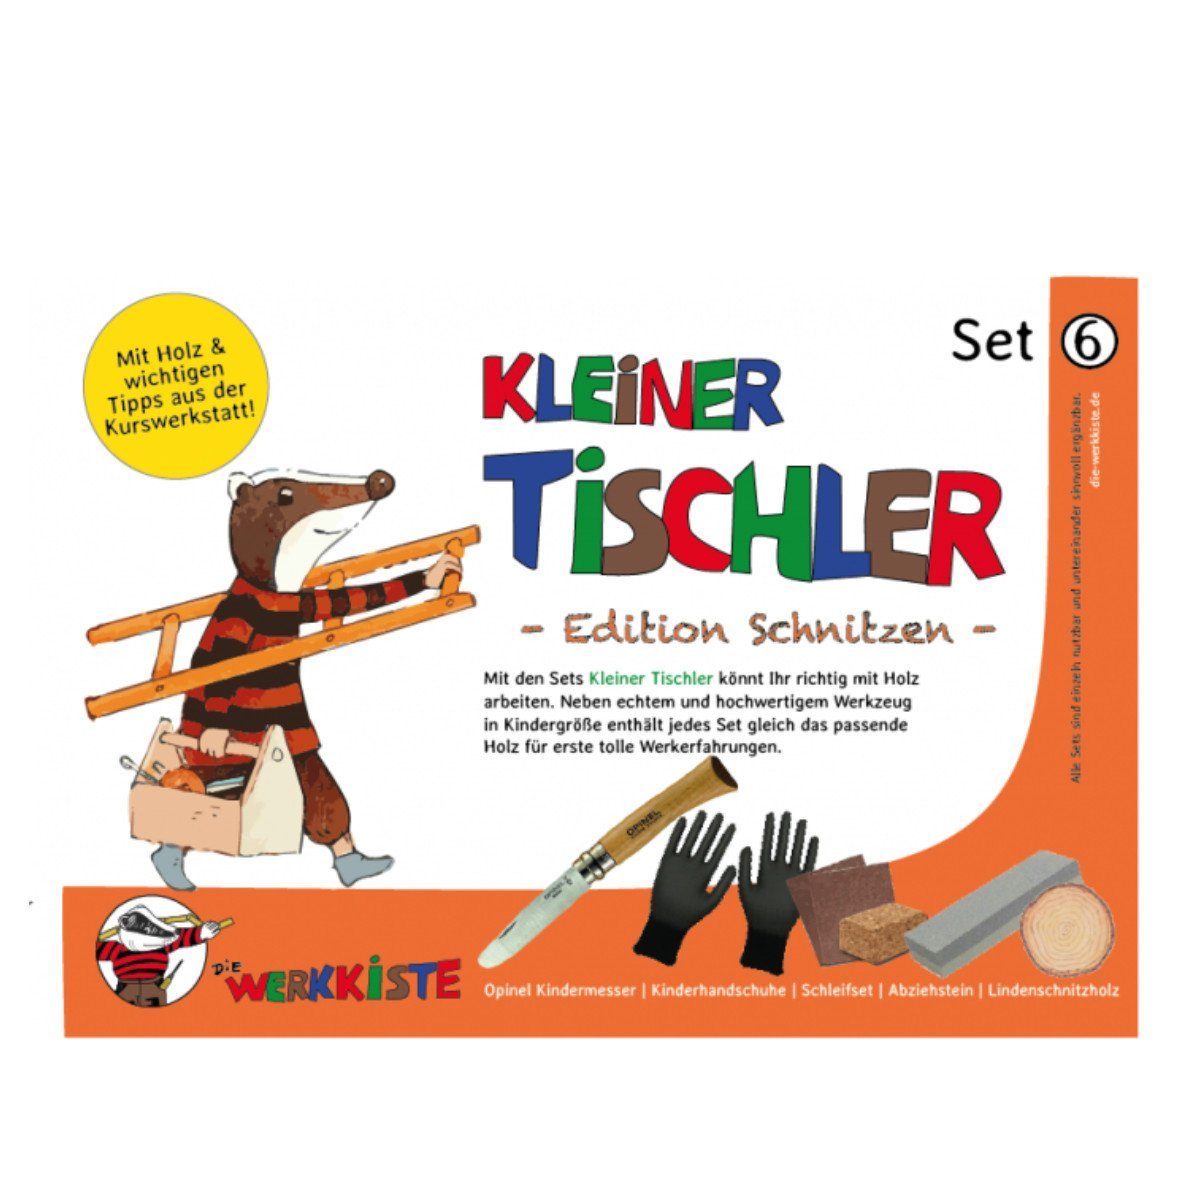 Die Werkkiste Kinder-Werkzeug-Set Kleiner Tischler Set 6